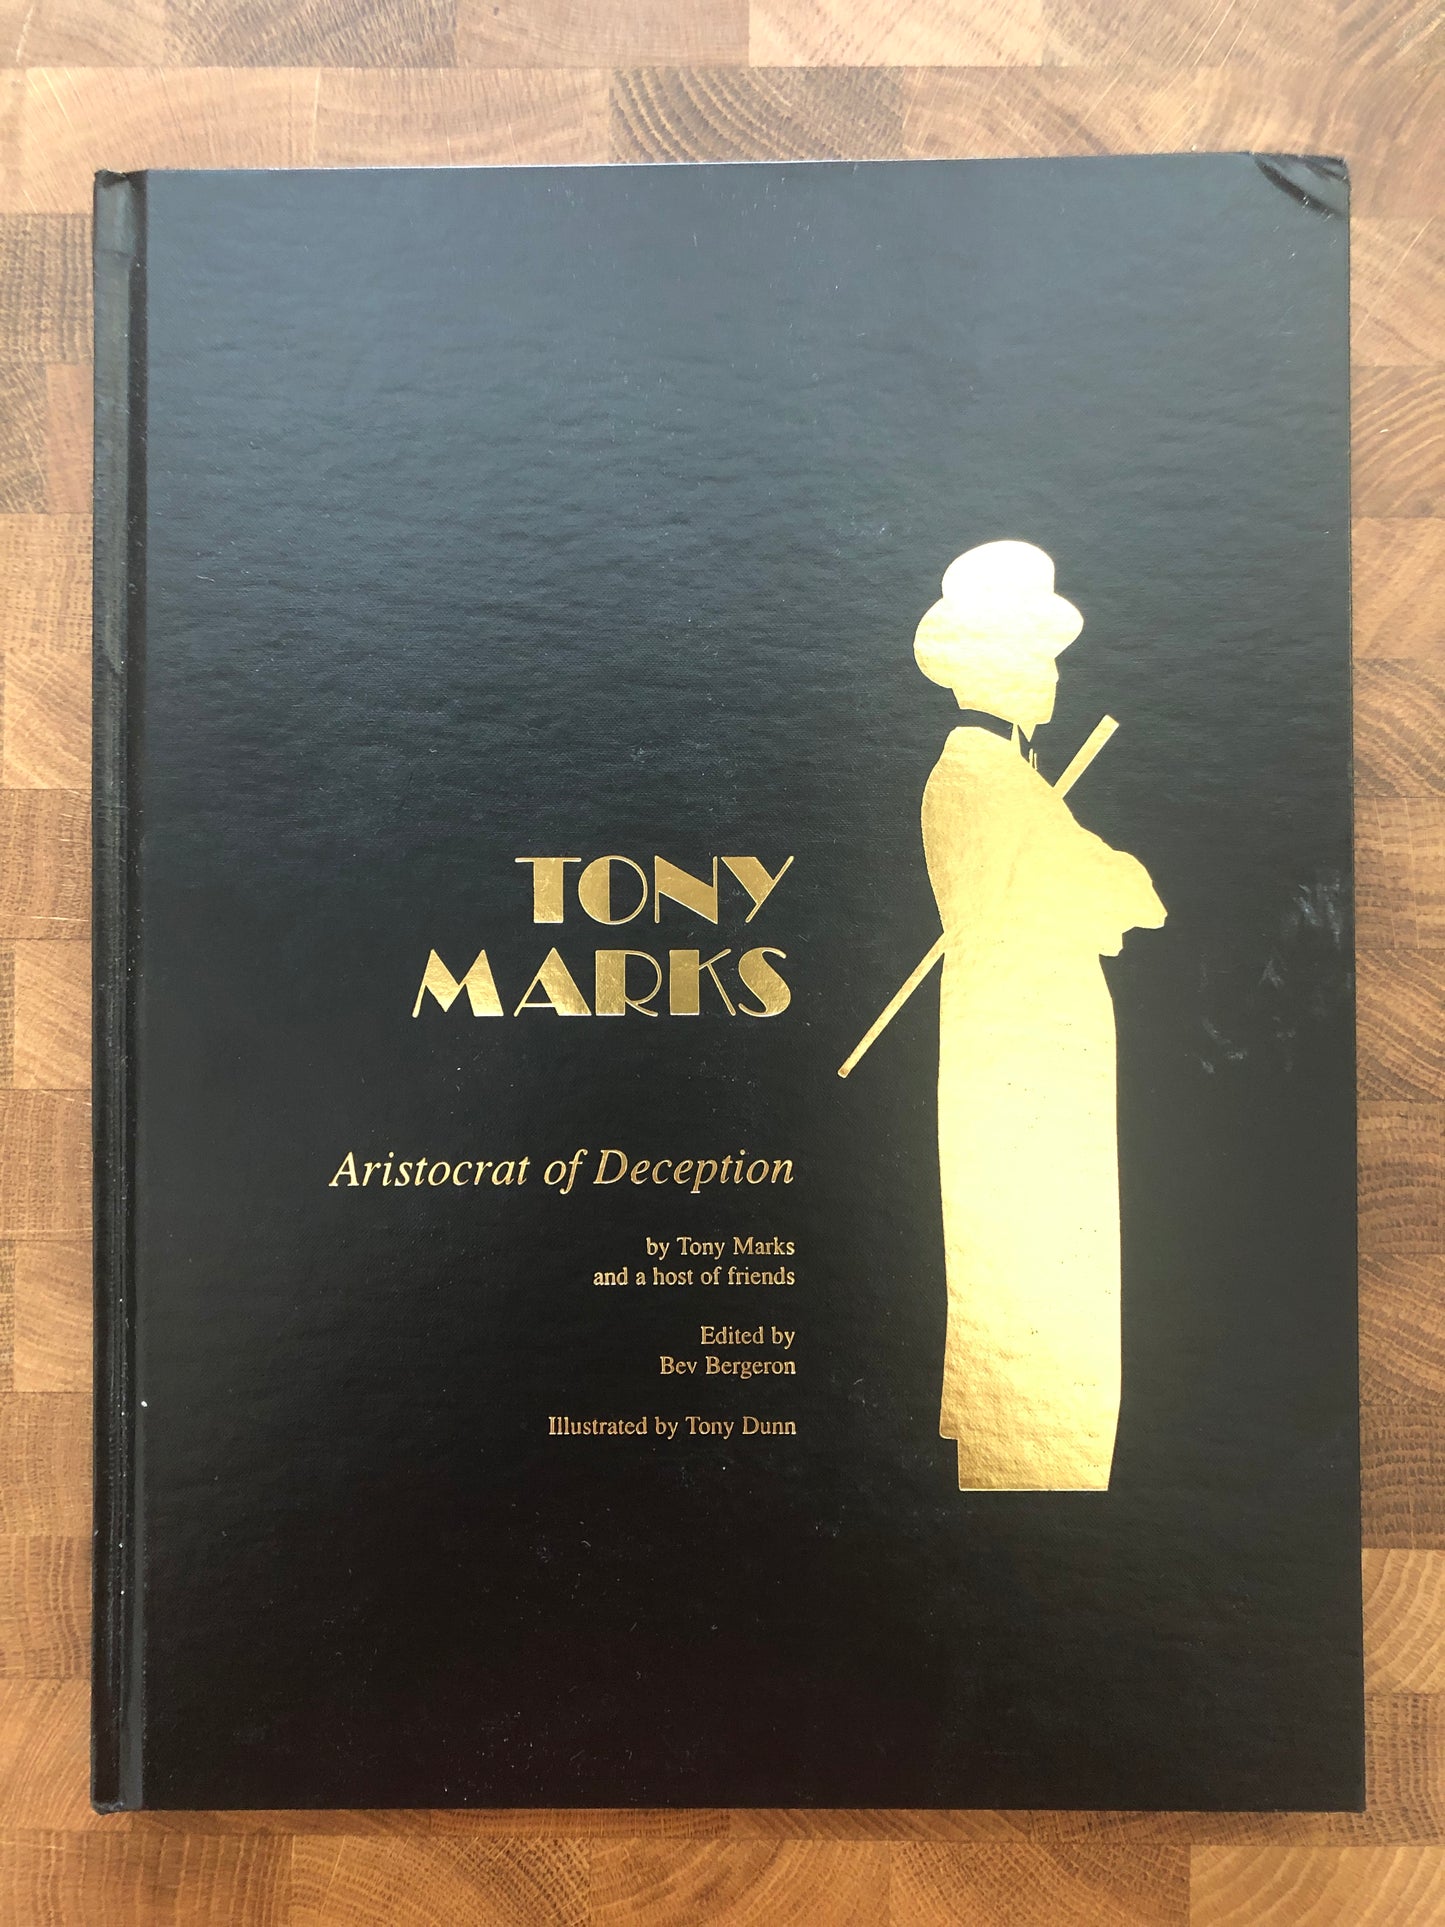 Tony Marks: Aristocrat of Deception - Tony Marks